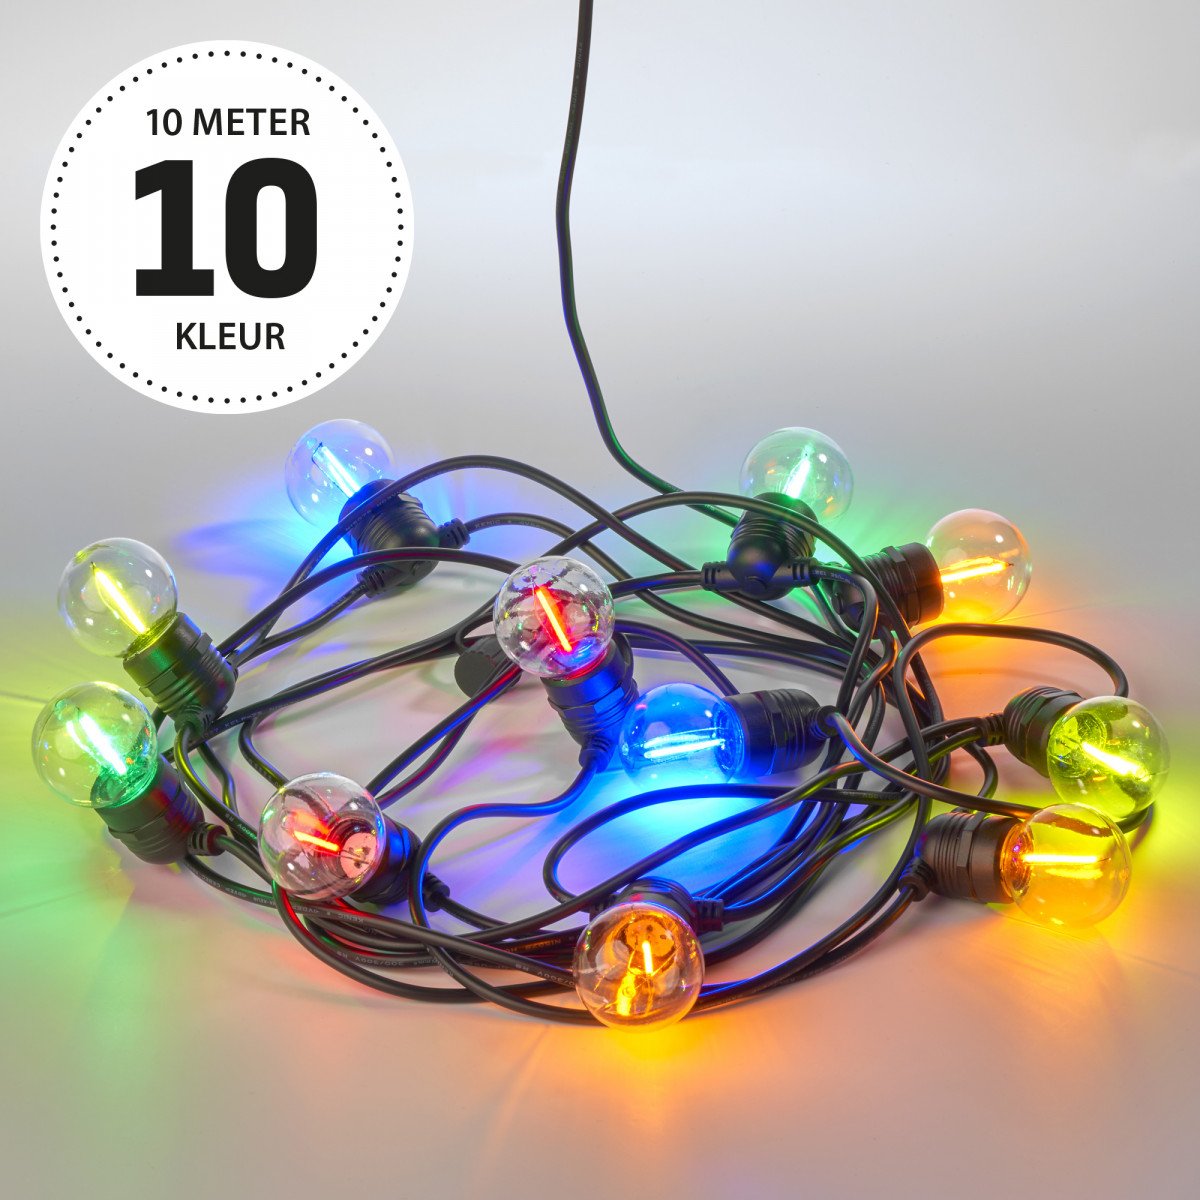 10 Meter Party Lichterkette mit Bunten 12 Volt LED's von Nostalux.de 